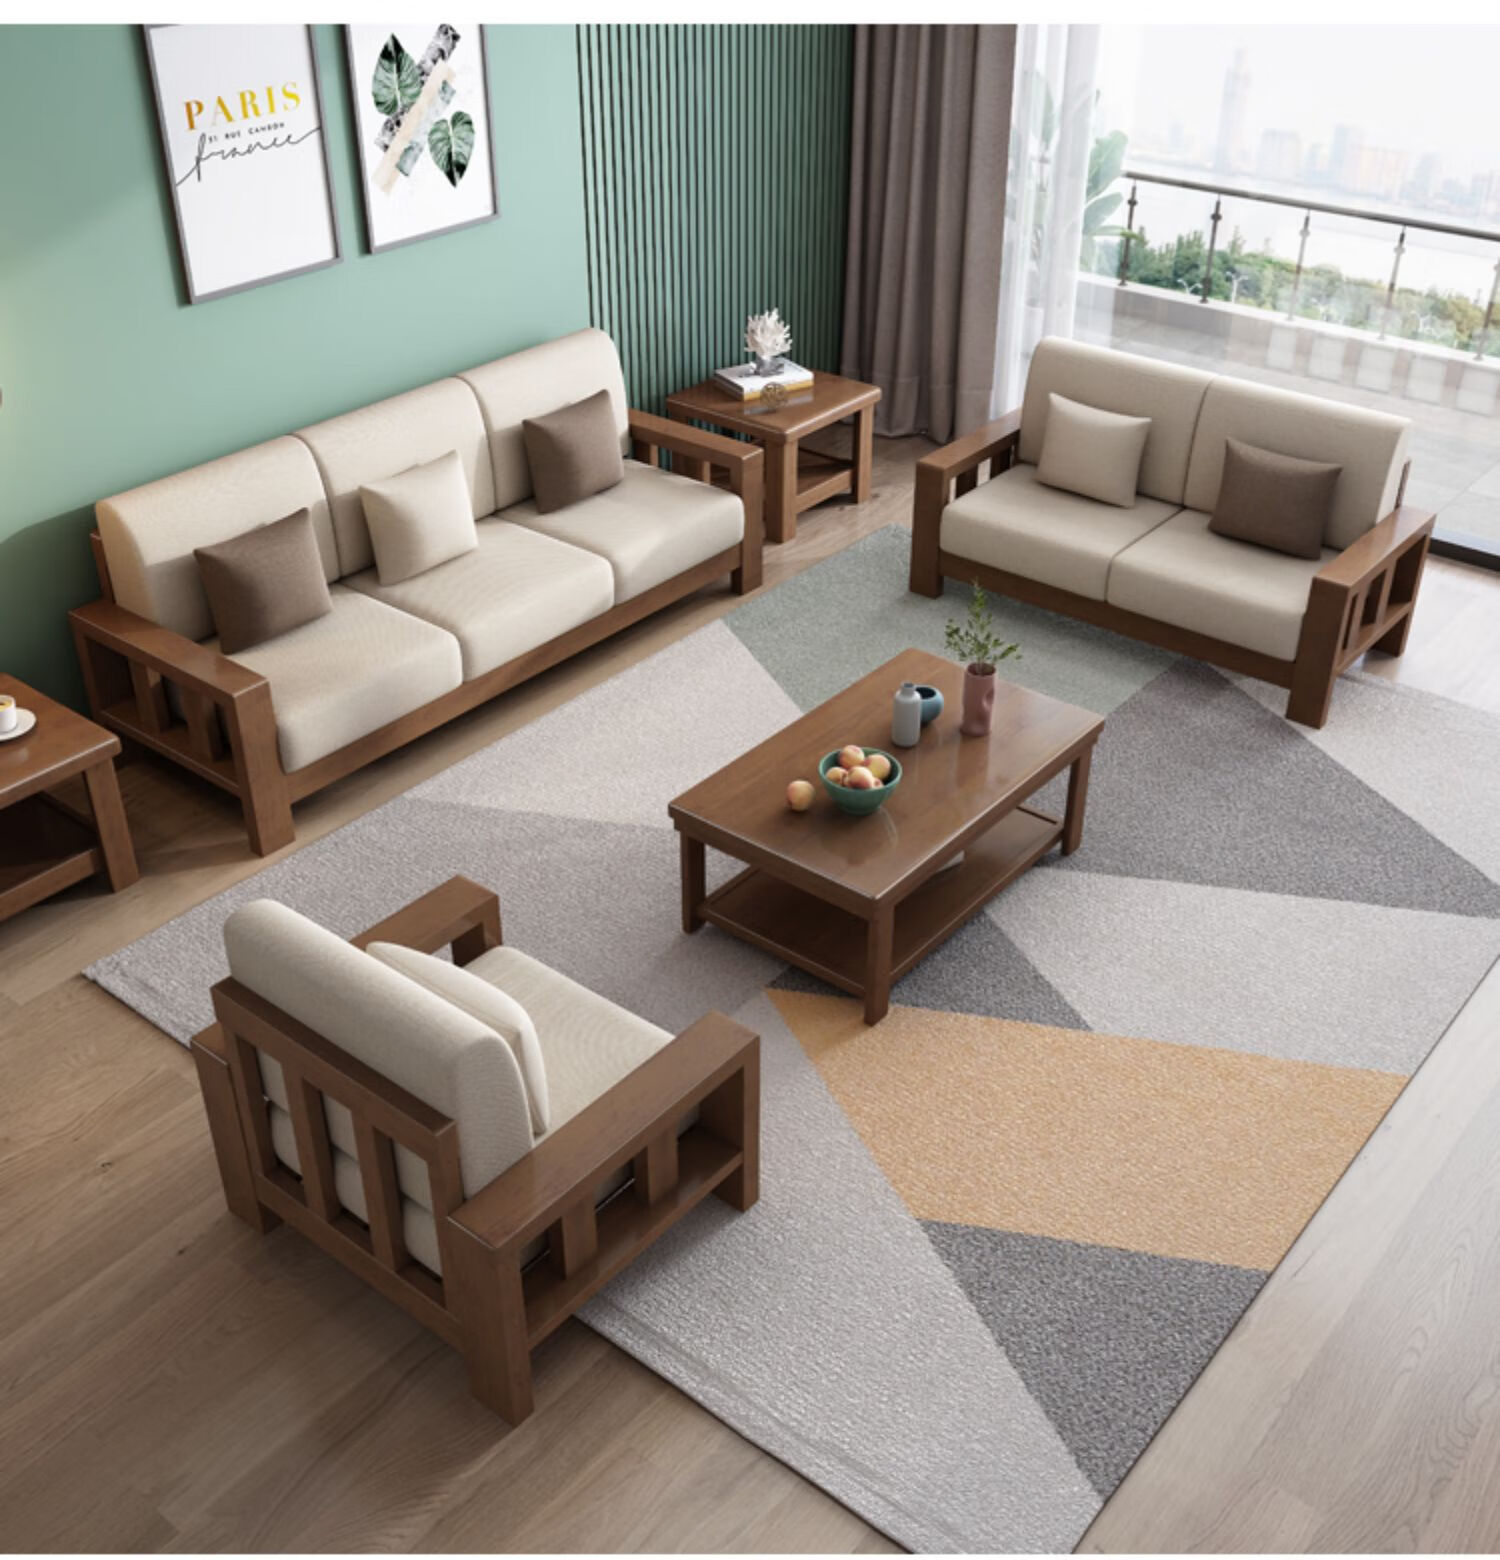 创意沙发现代简约中式实木沙发组合小户型三人位木质布艺沙发床家用